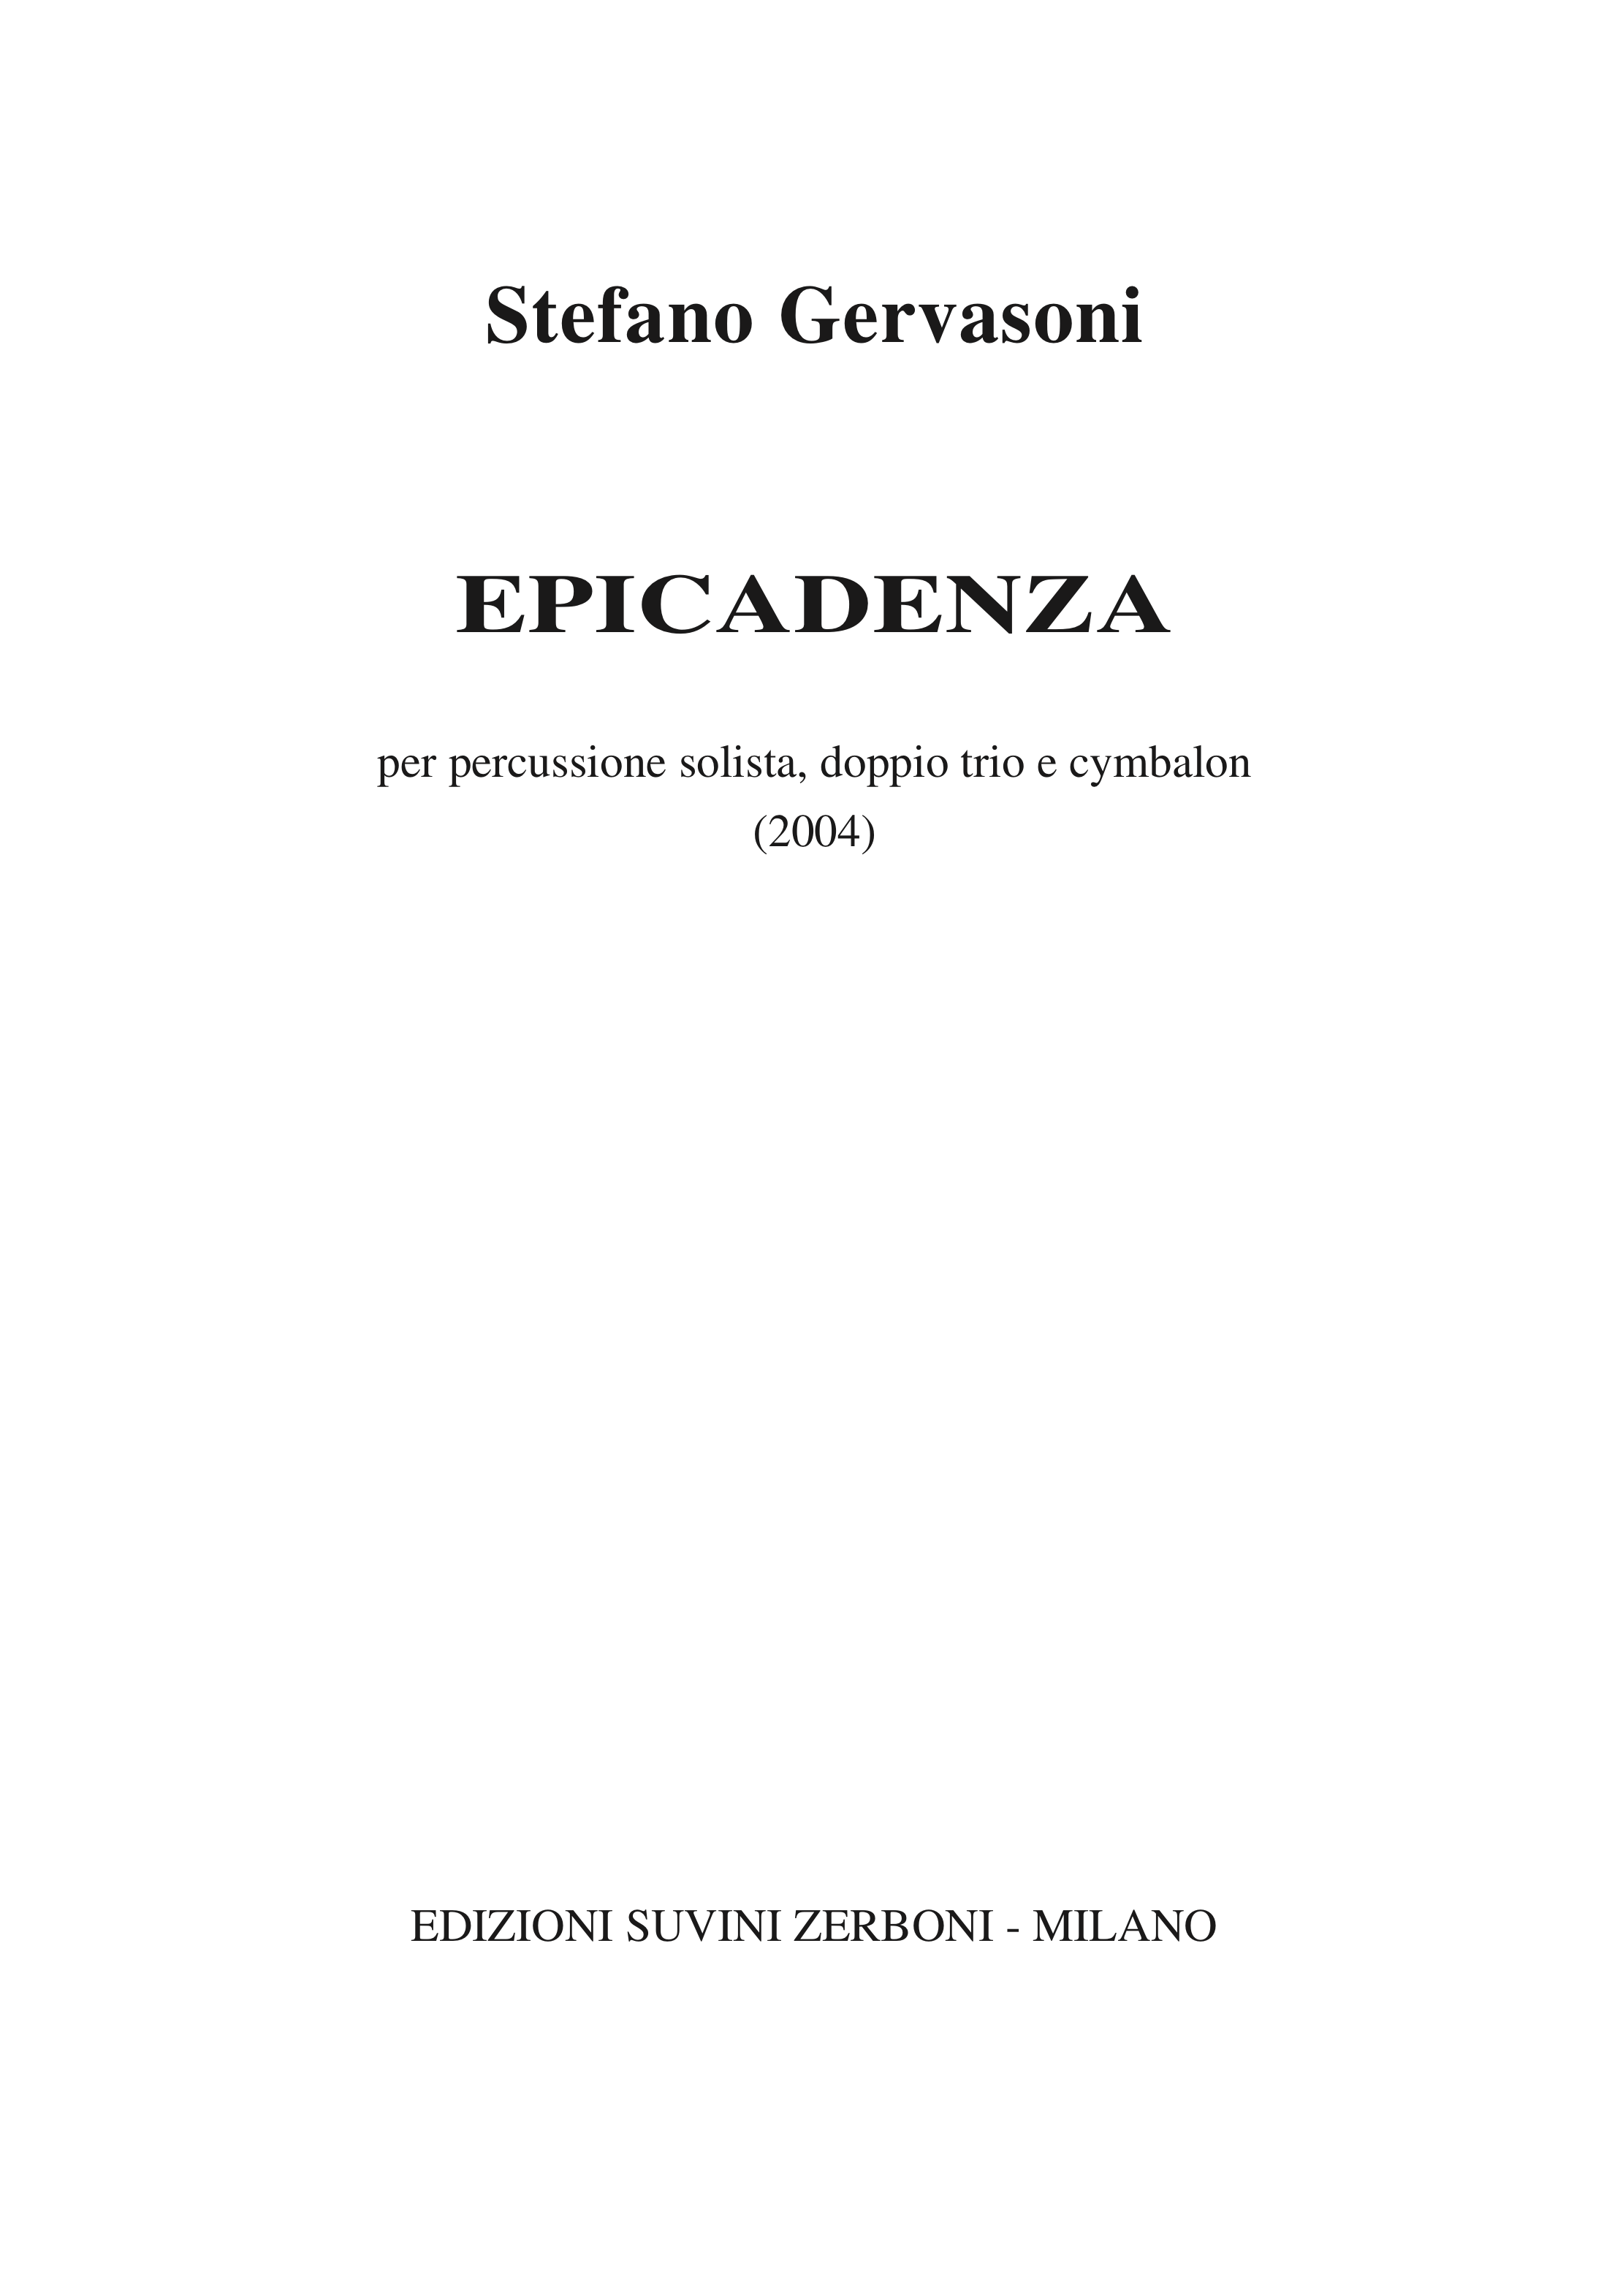 Epicadenza_Gervasoni 1